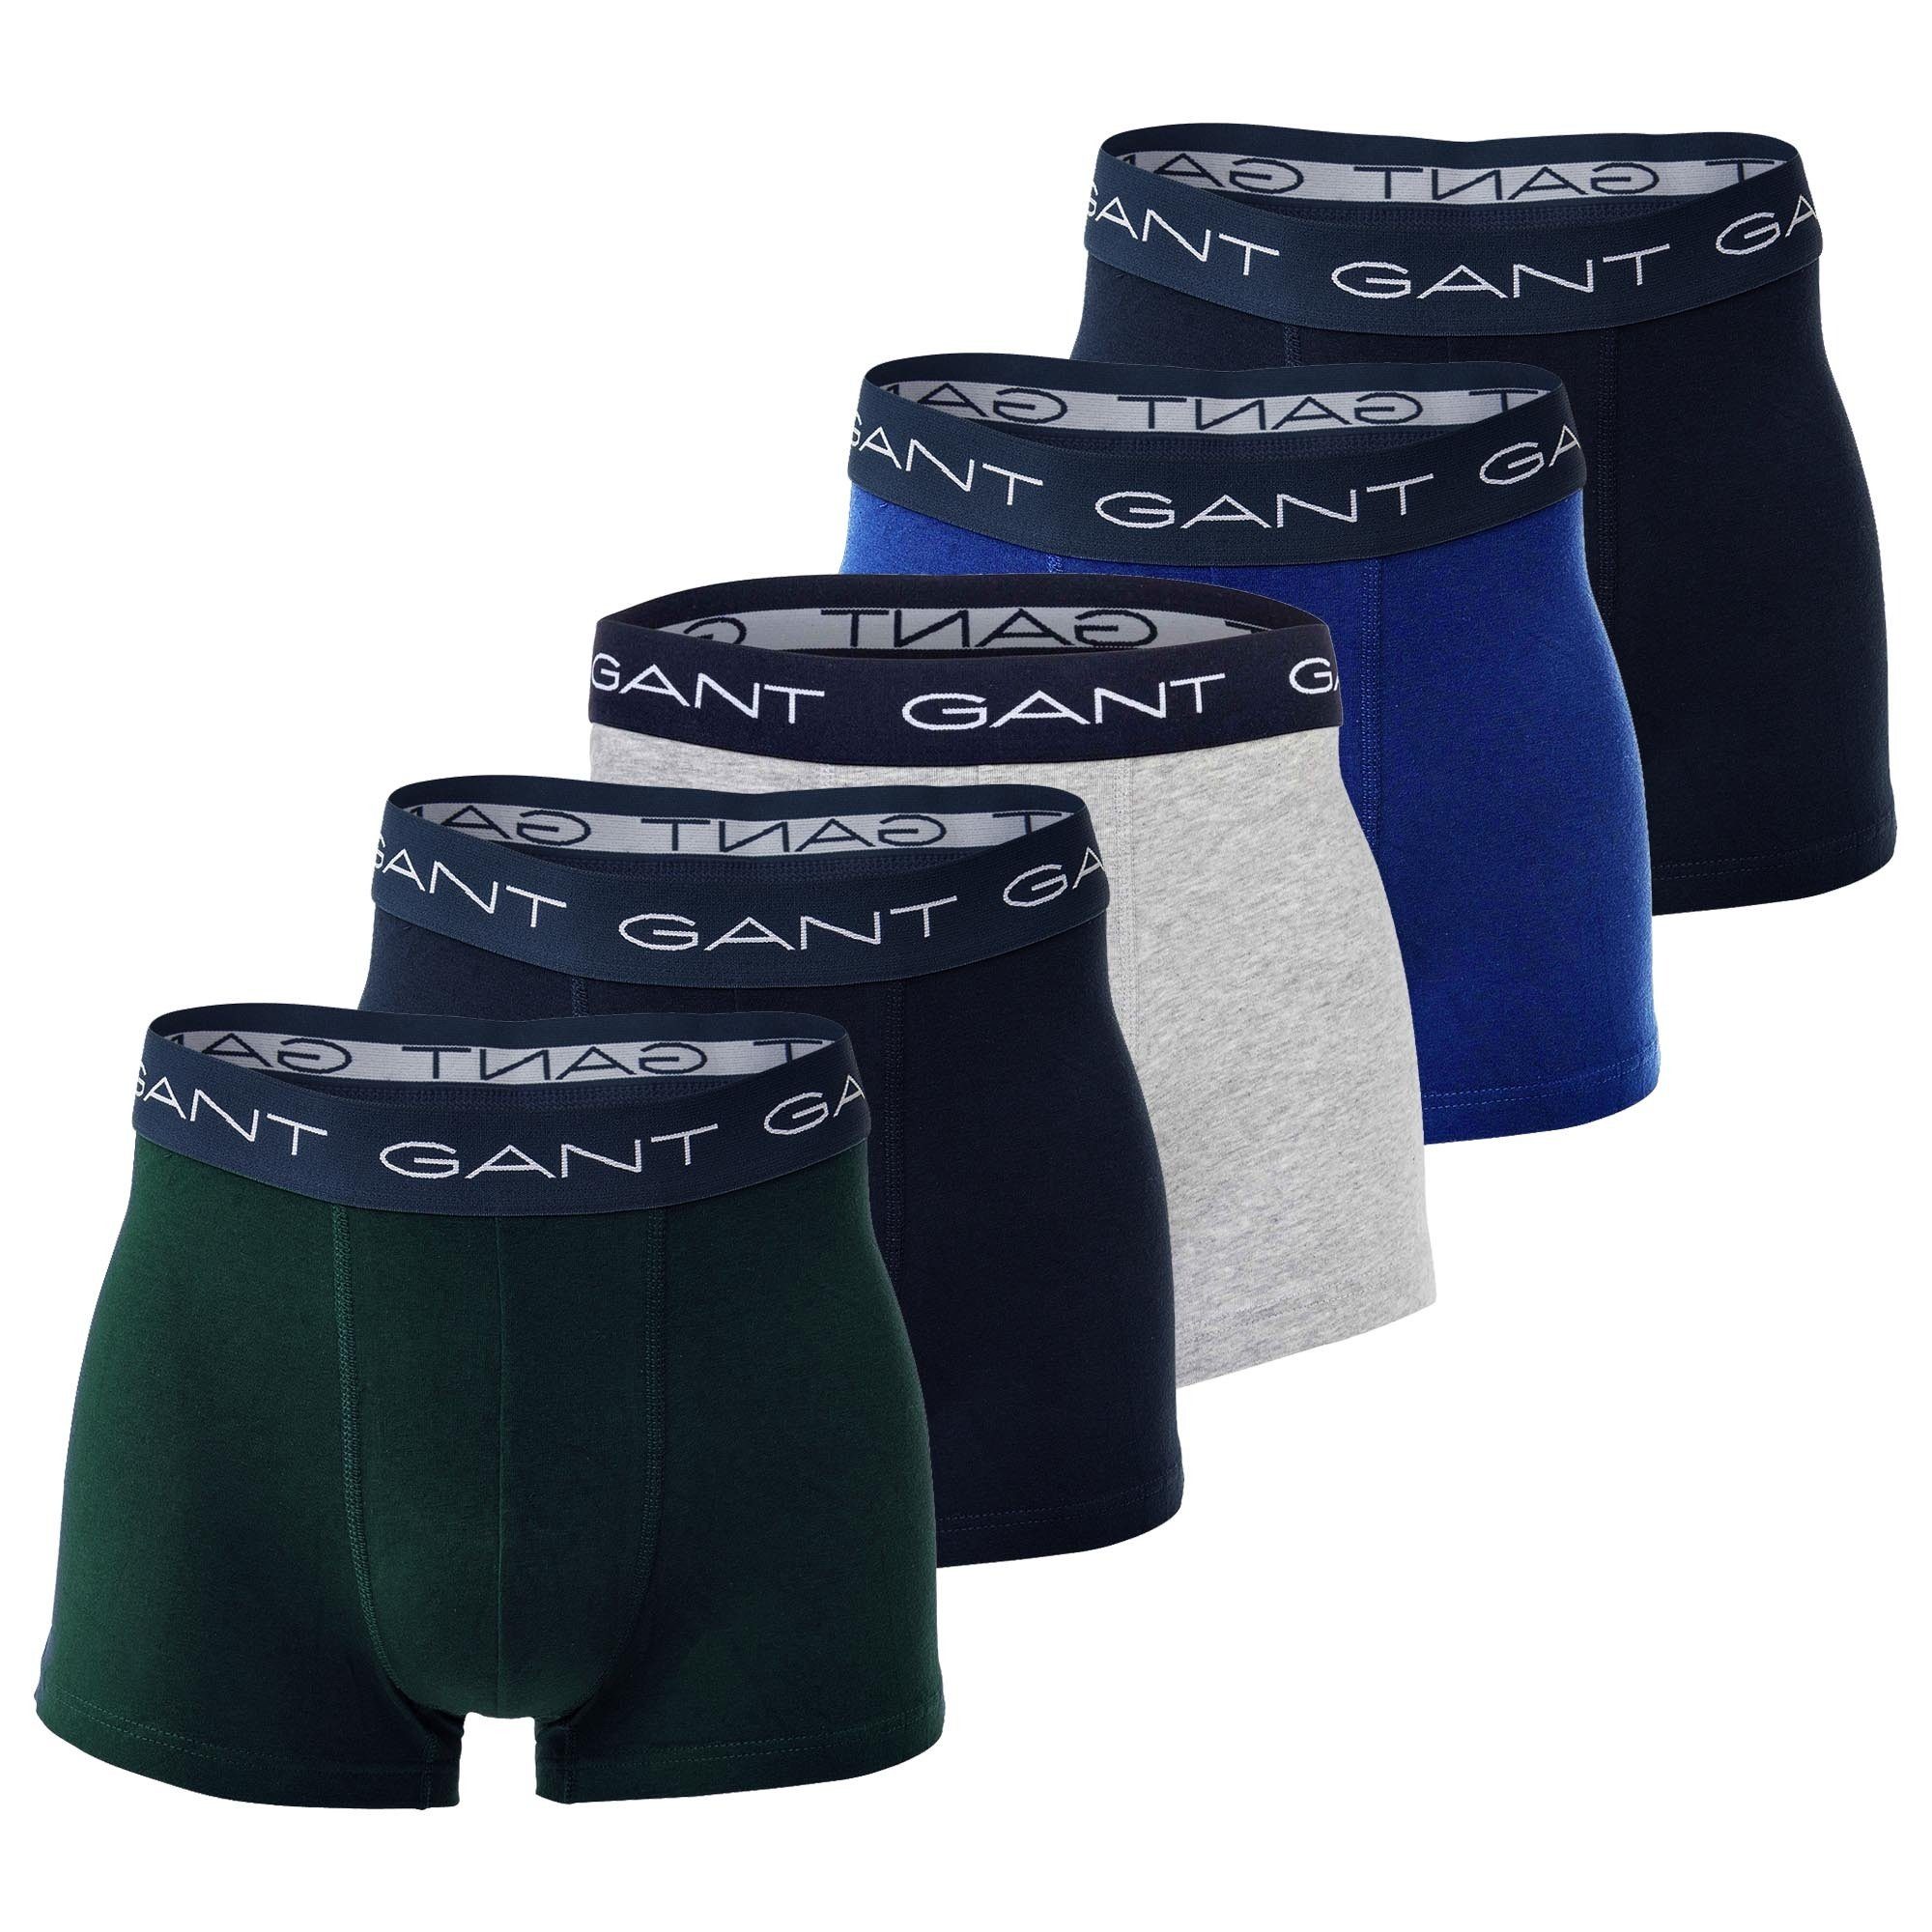 Boxer 5er Gant Herren Basic Pack Blau/Grün/Grau Boxershorts, Trunks -